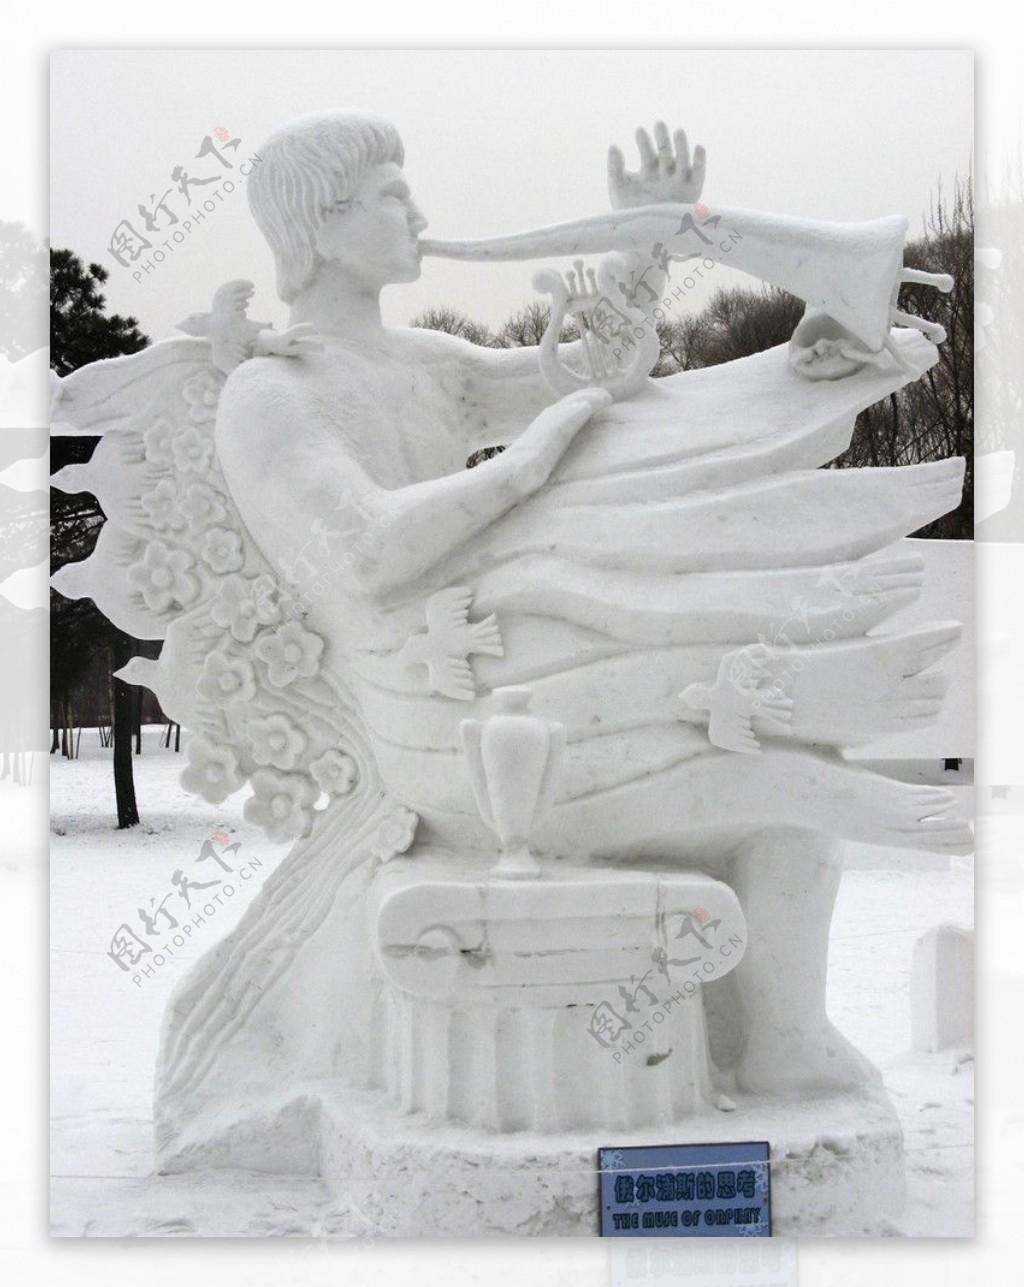 哈尔滨冰雪展雪雕俄尔浦斯的思考图片